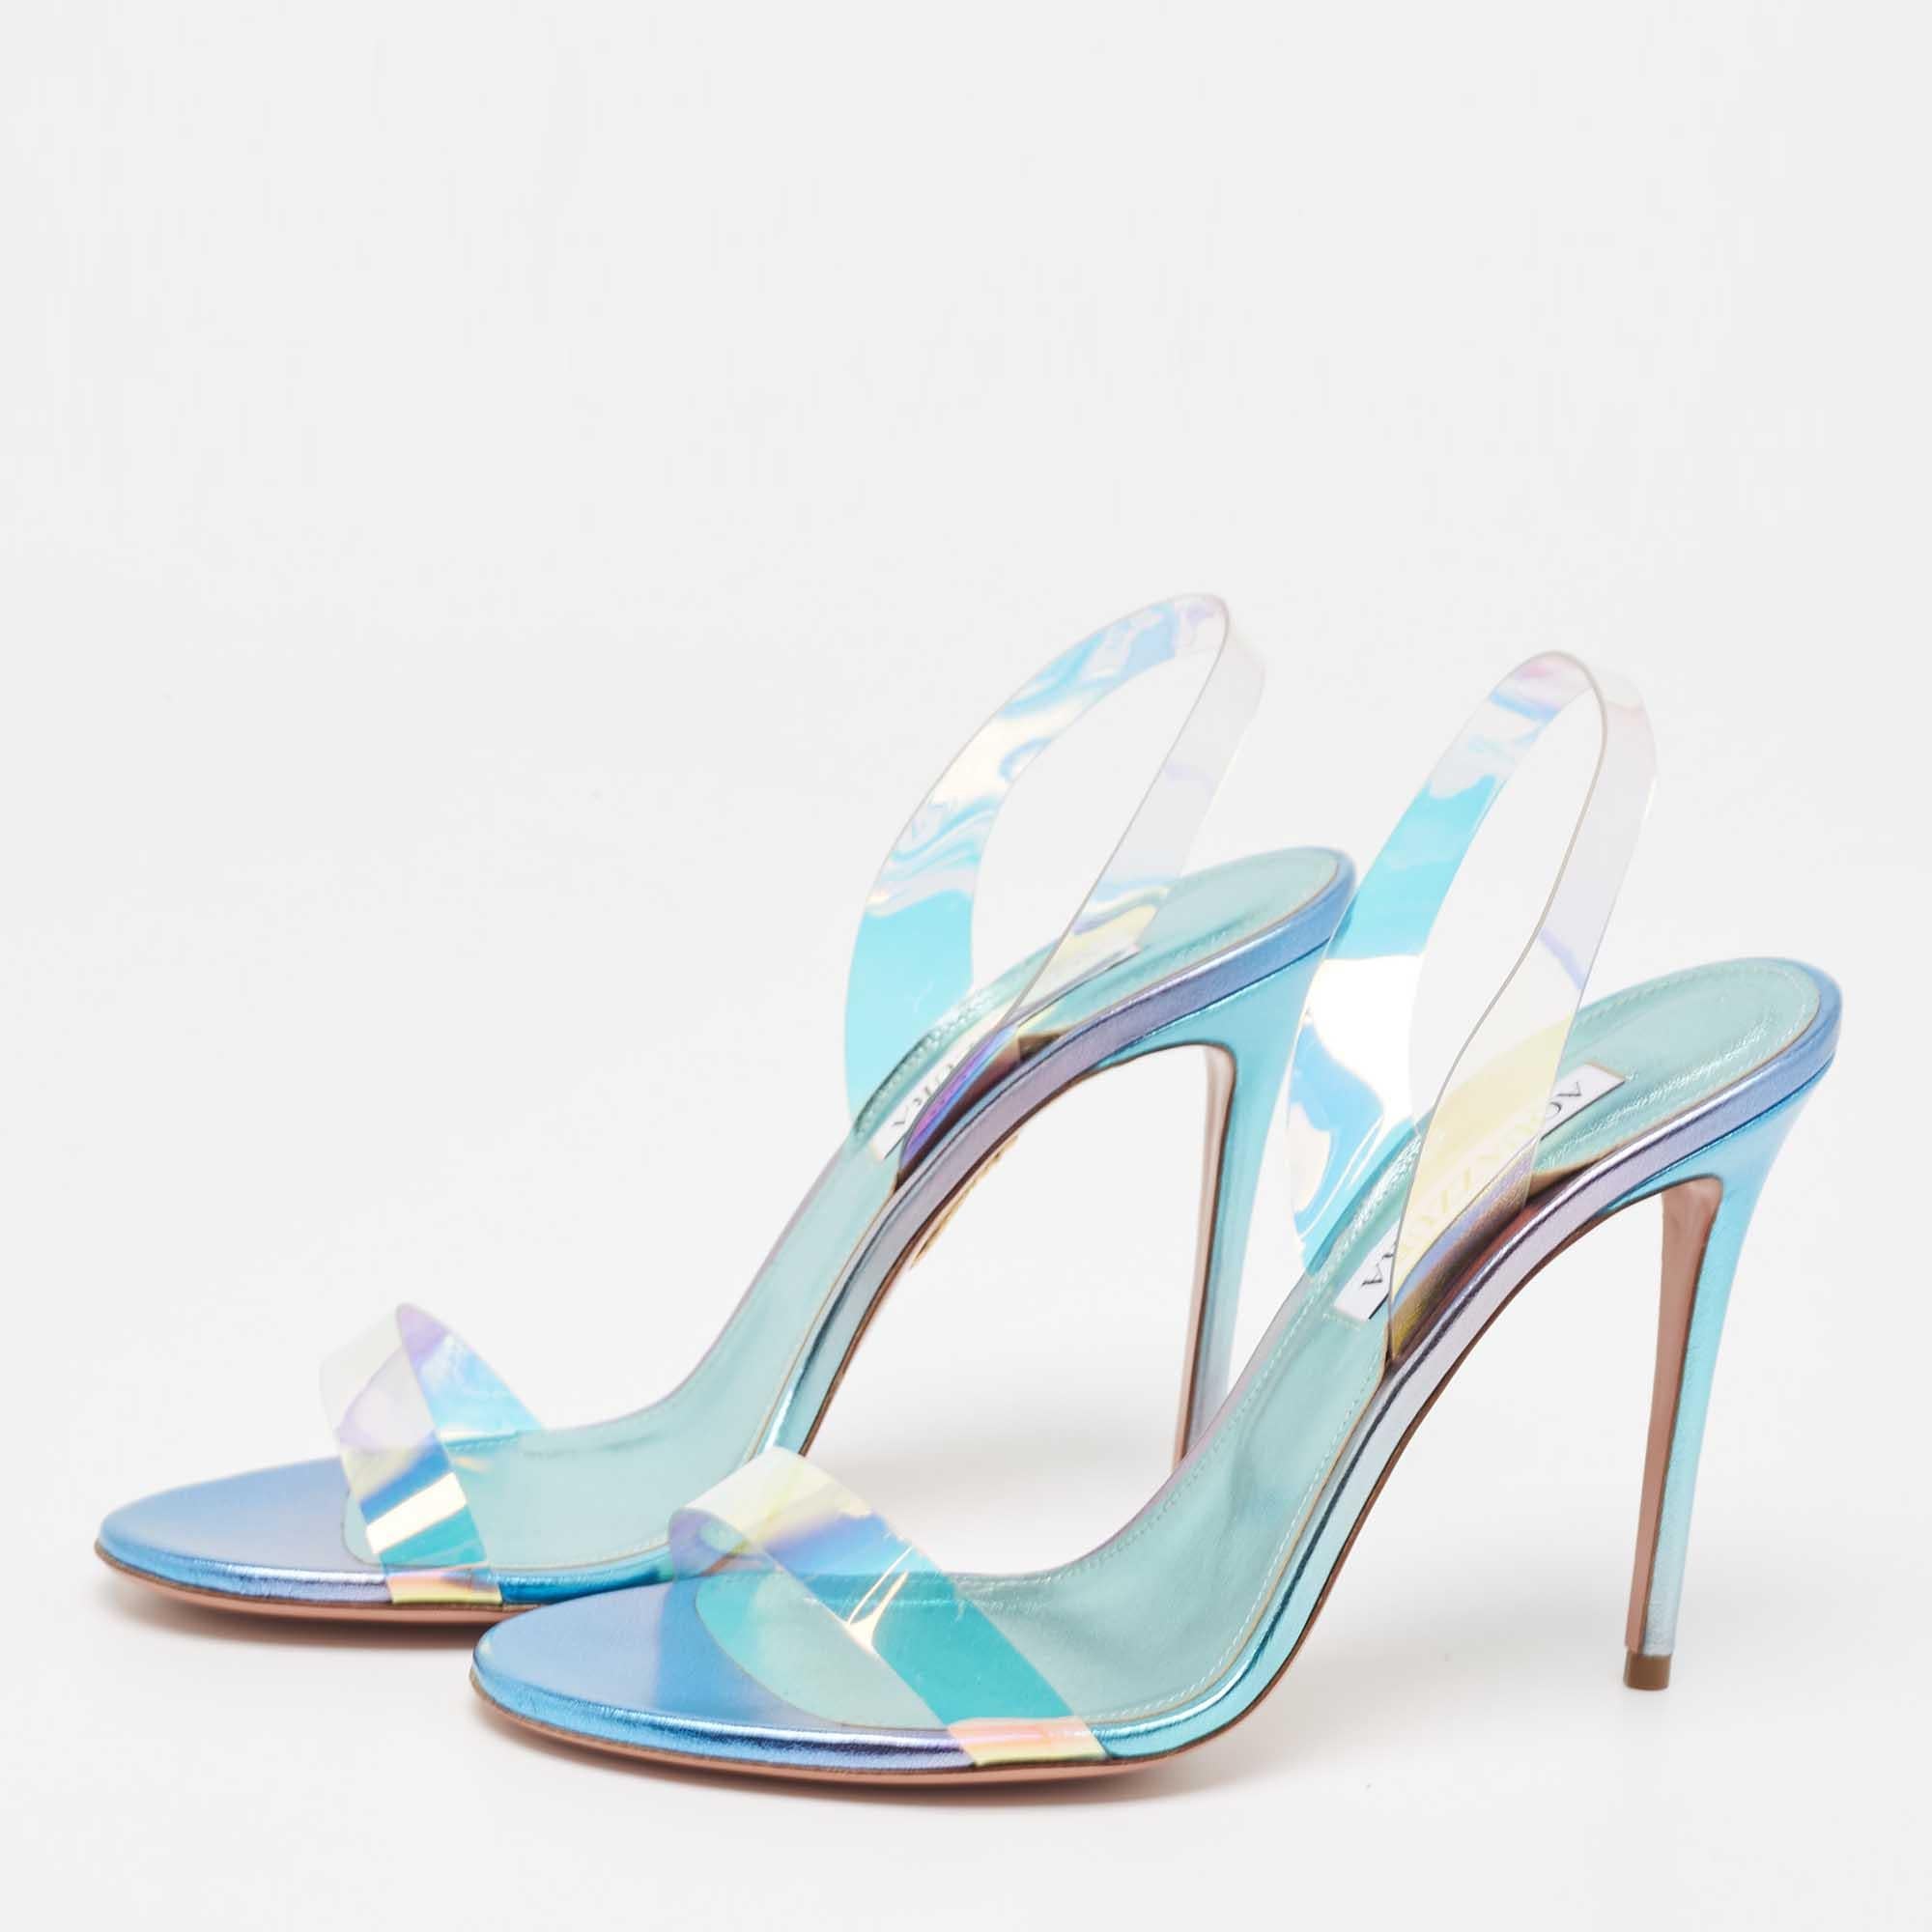 Aquazzura Blue Iridescent PVC So Nude Slingback Sandals Size 38.5 4